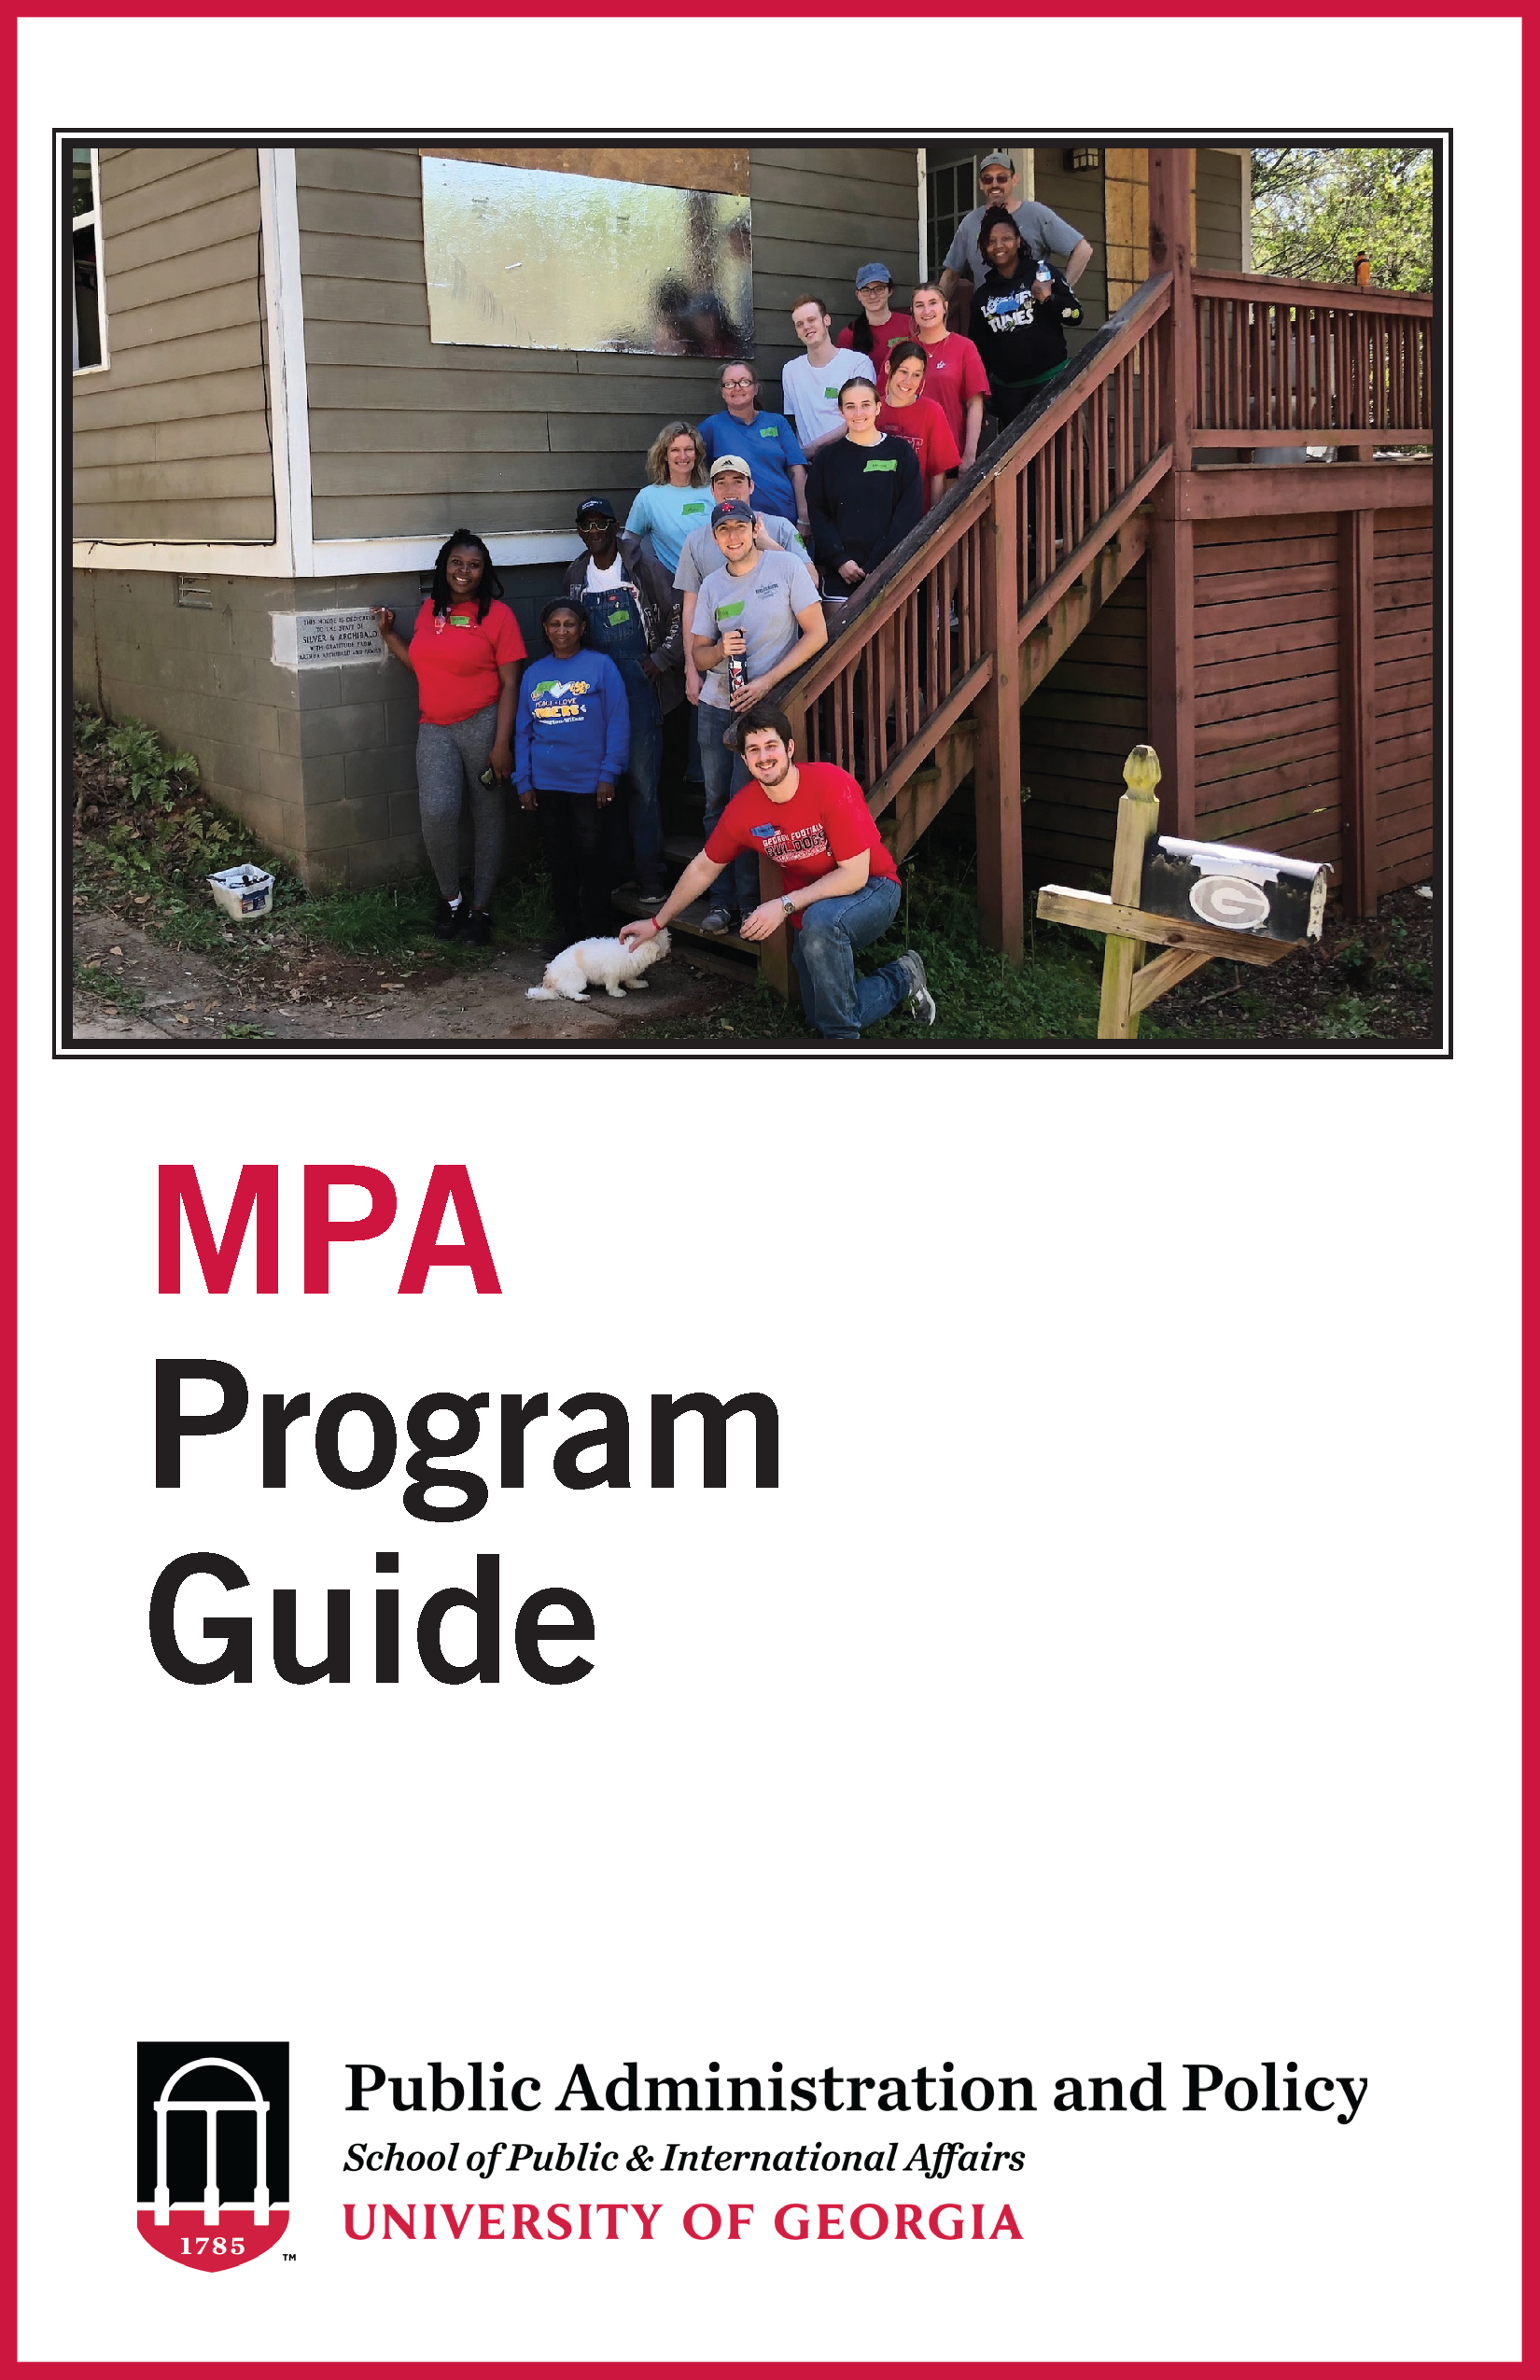 Degree Program Guide